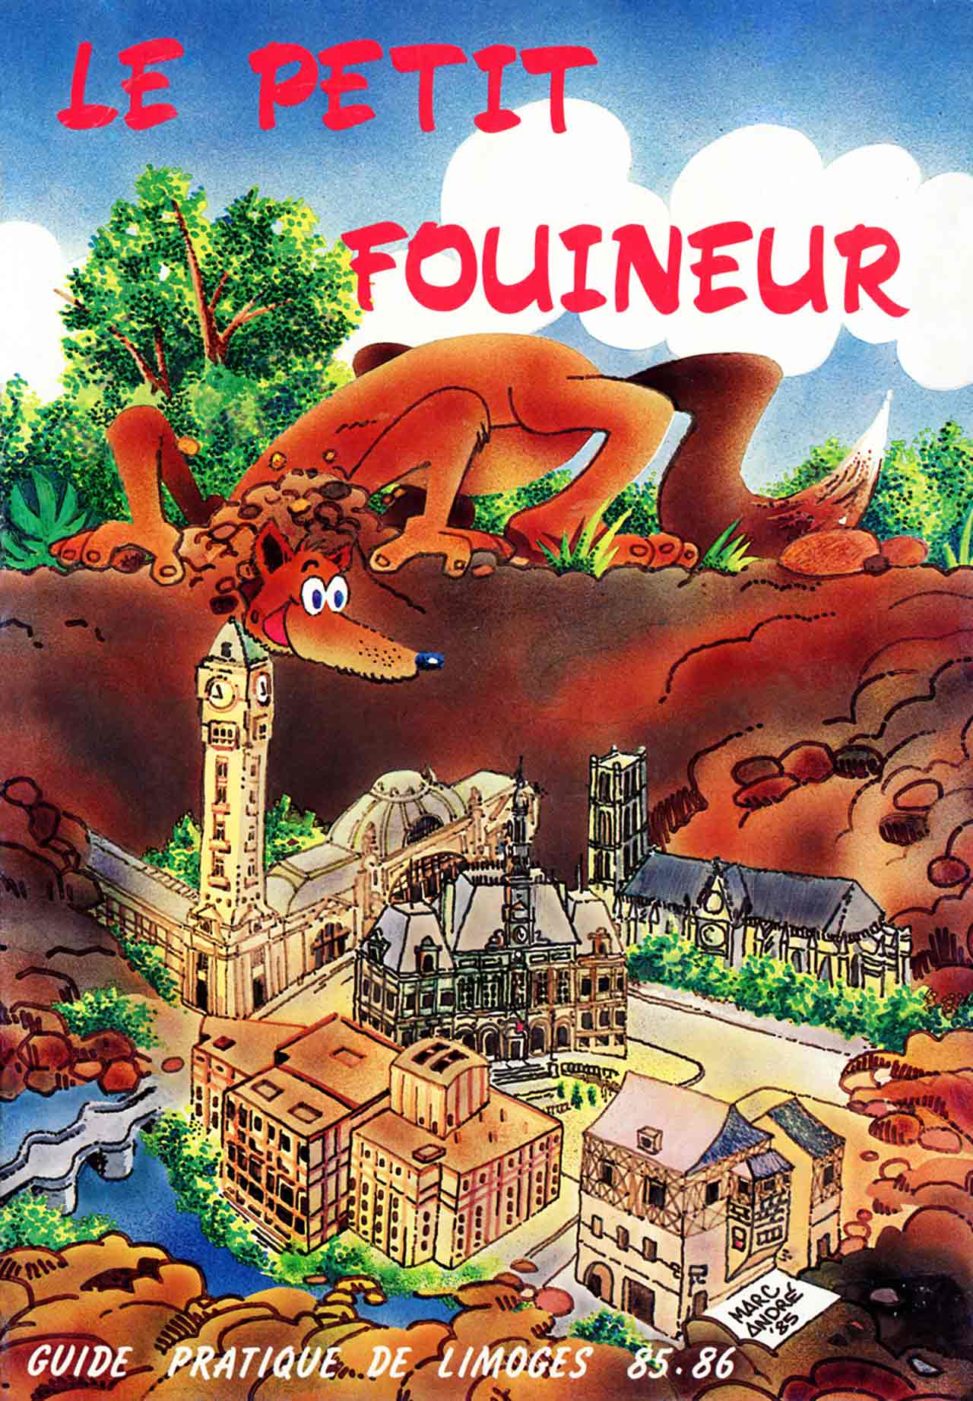 Guide pratique de Limoges Le Petit Fouineur est conçu et réalisé par l'agence Publi-First 1985